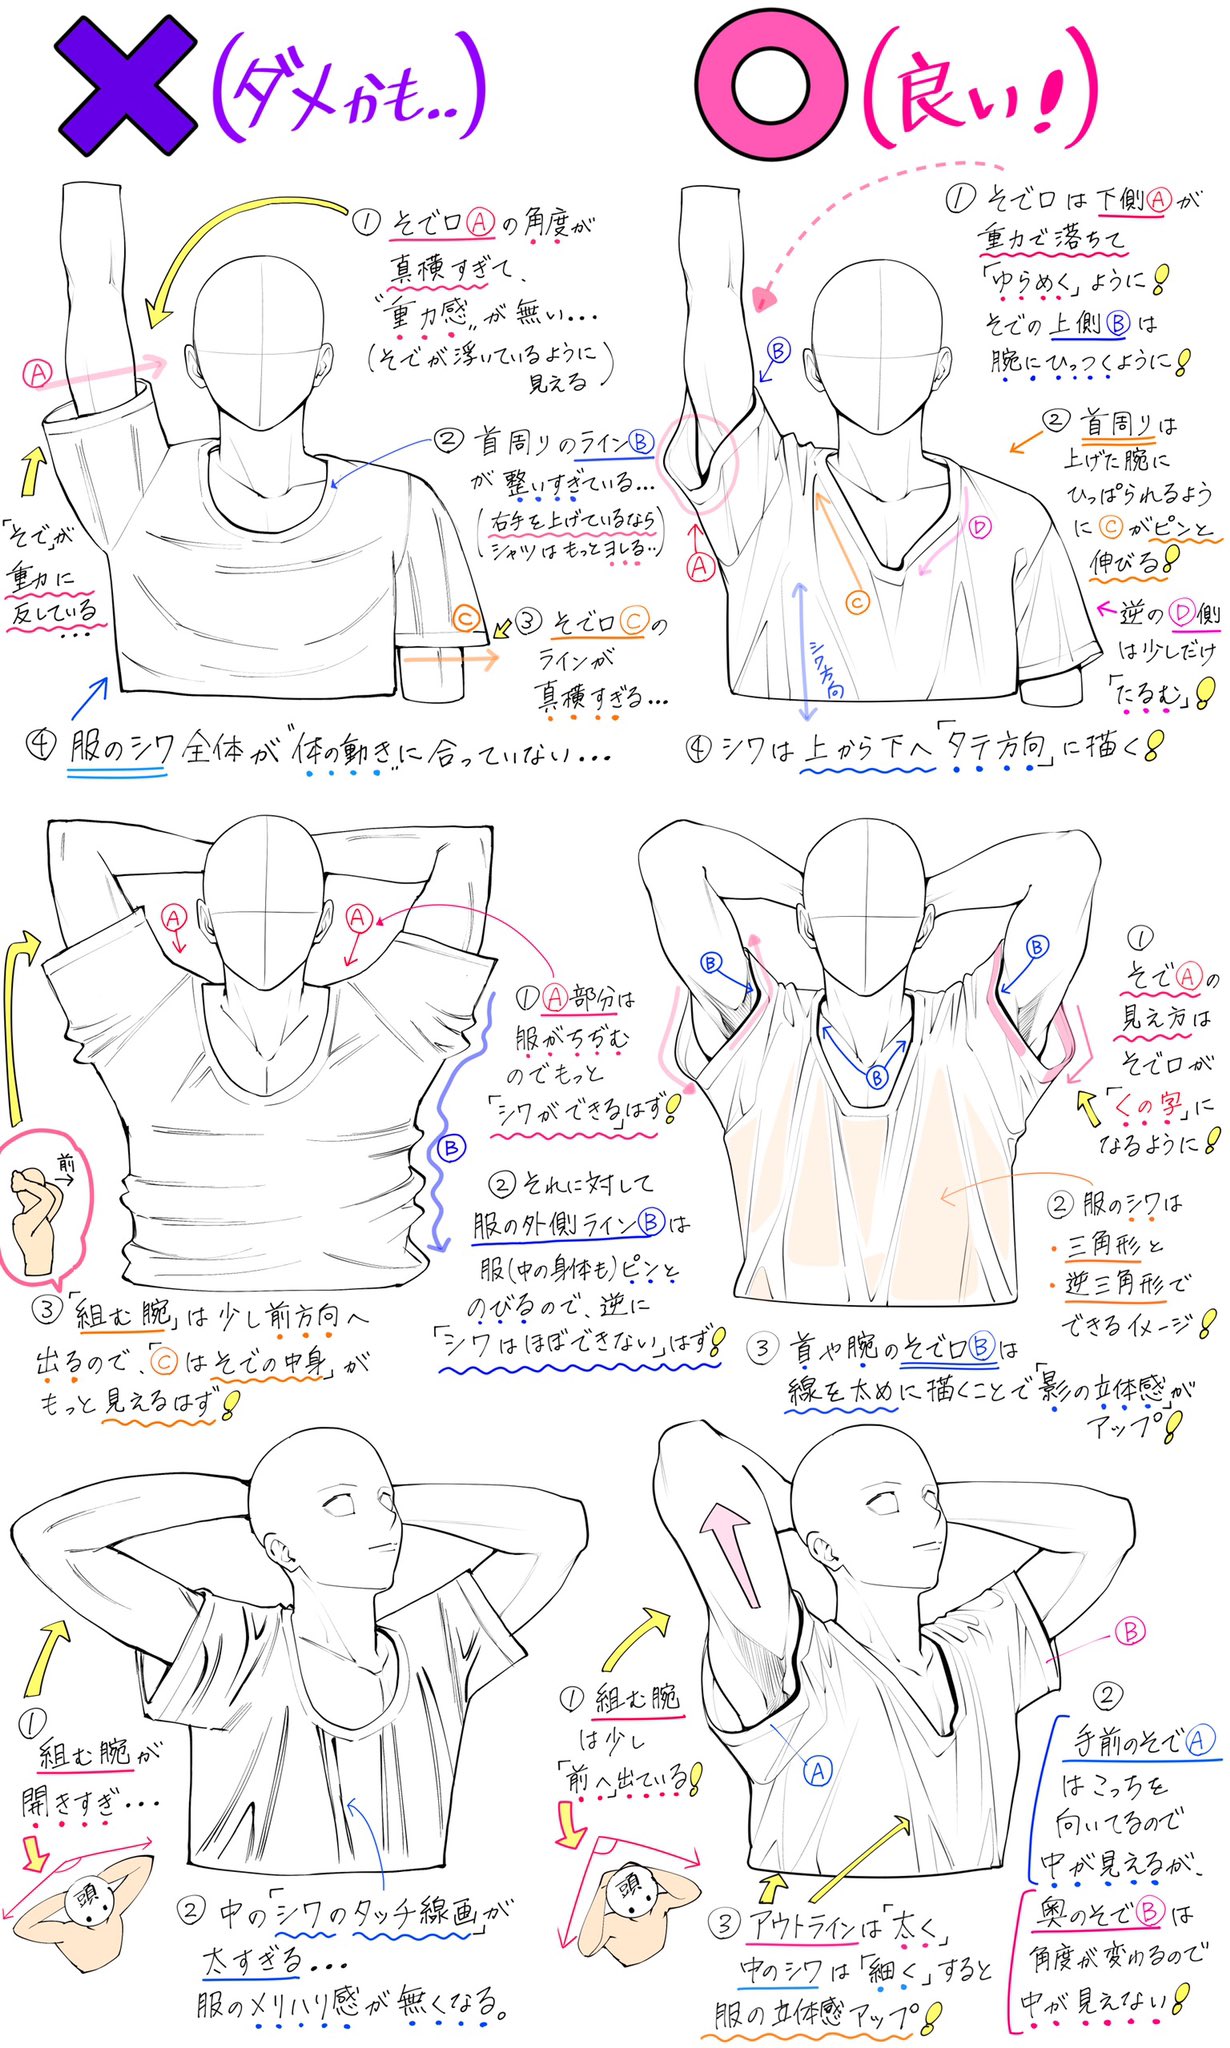 吉村拓也 イラスト講座 腕とtシャツがデッサンできない 体と洋服のシワが難しい ってときの上達しやすい練習方法 ダメかも と 良いかも T Co 2h3qymfijp Twitter